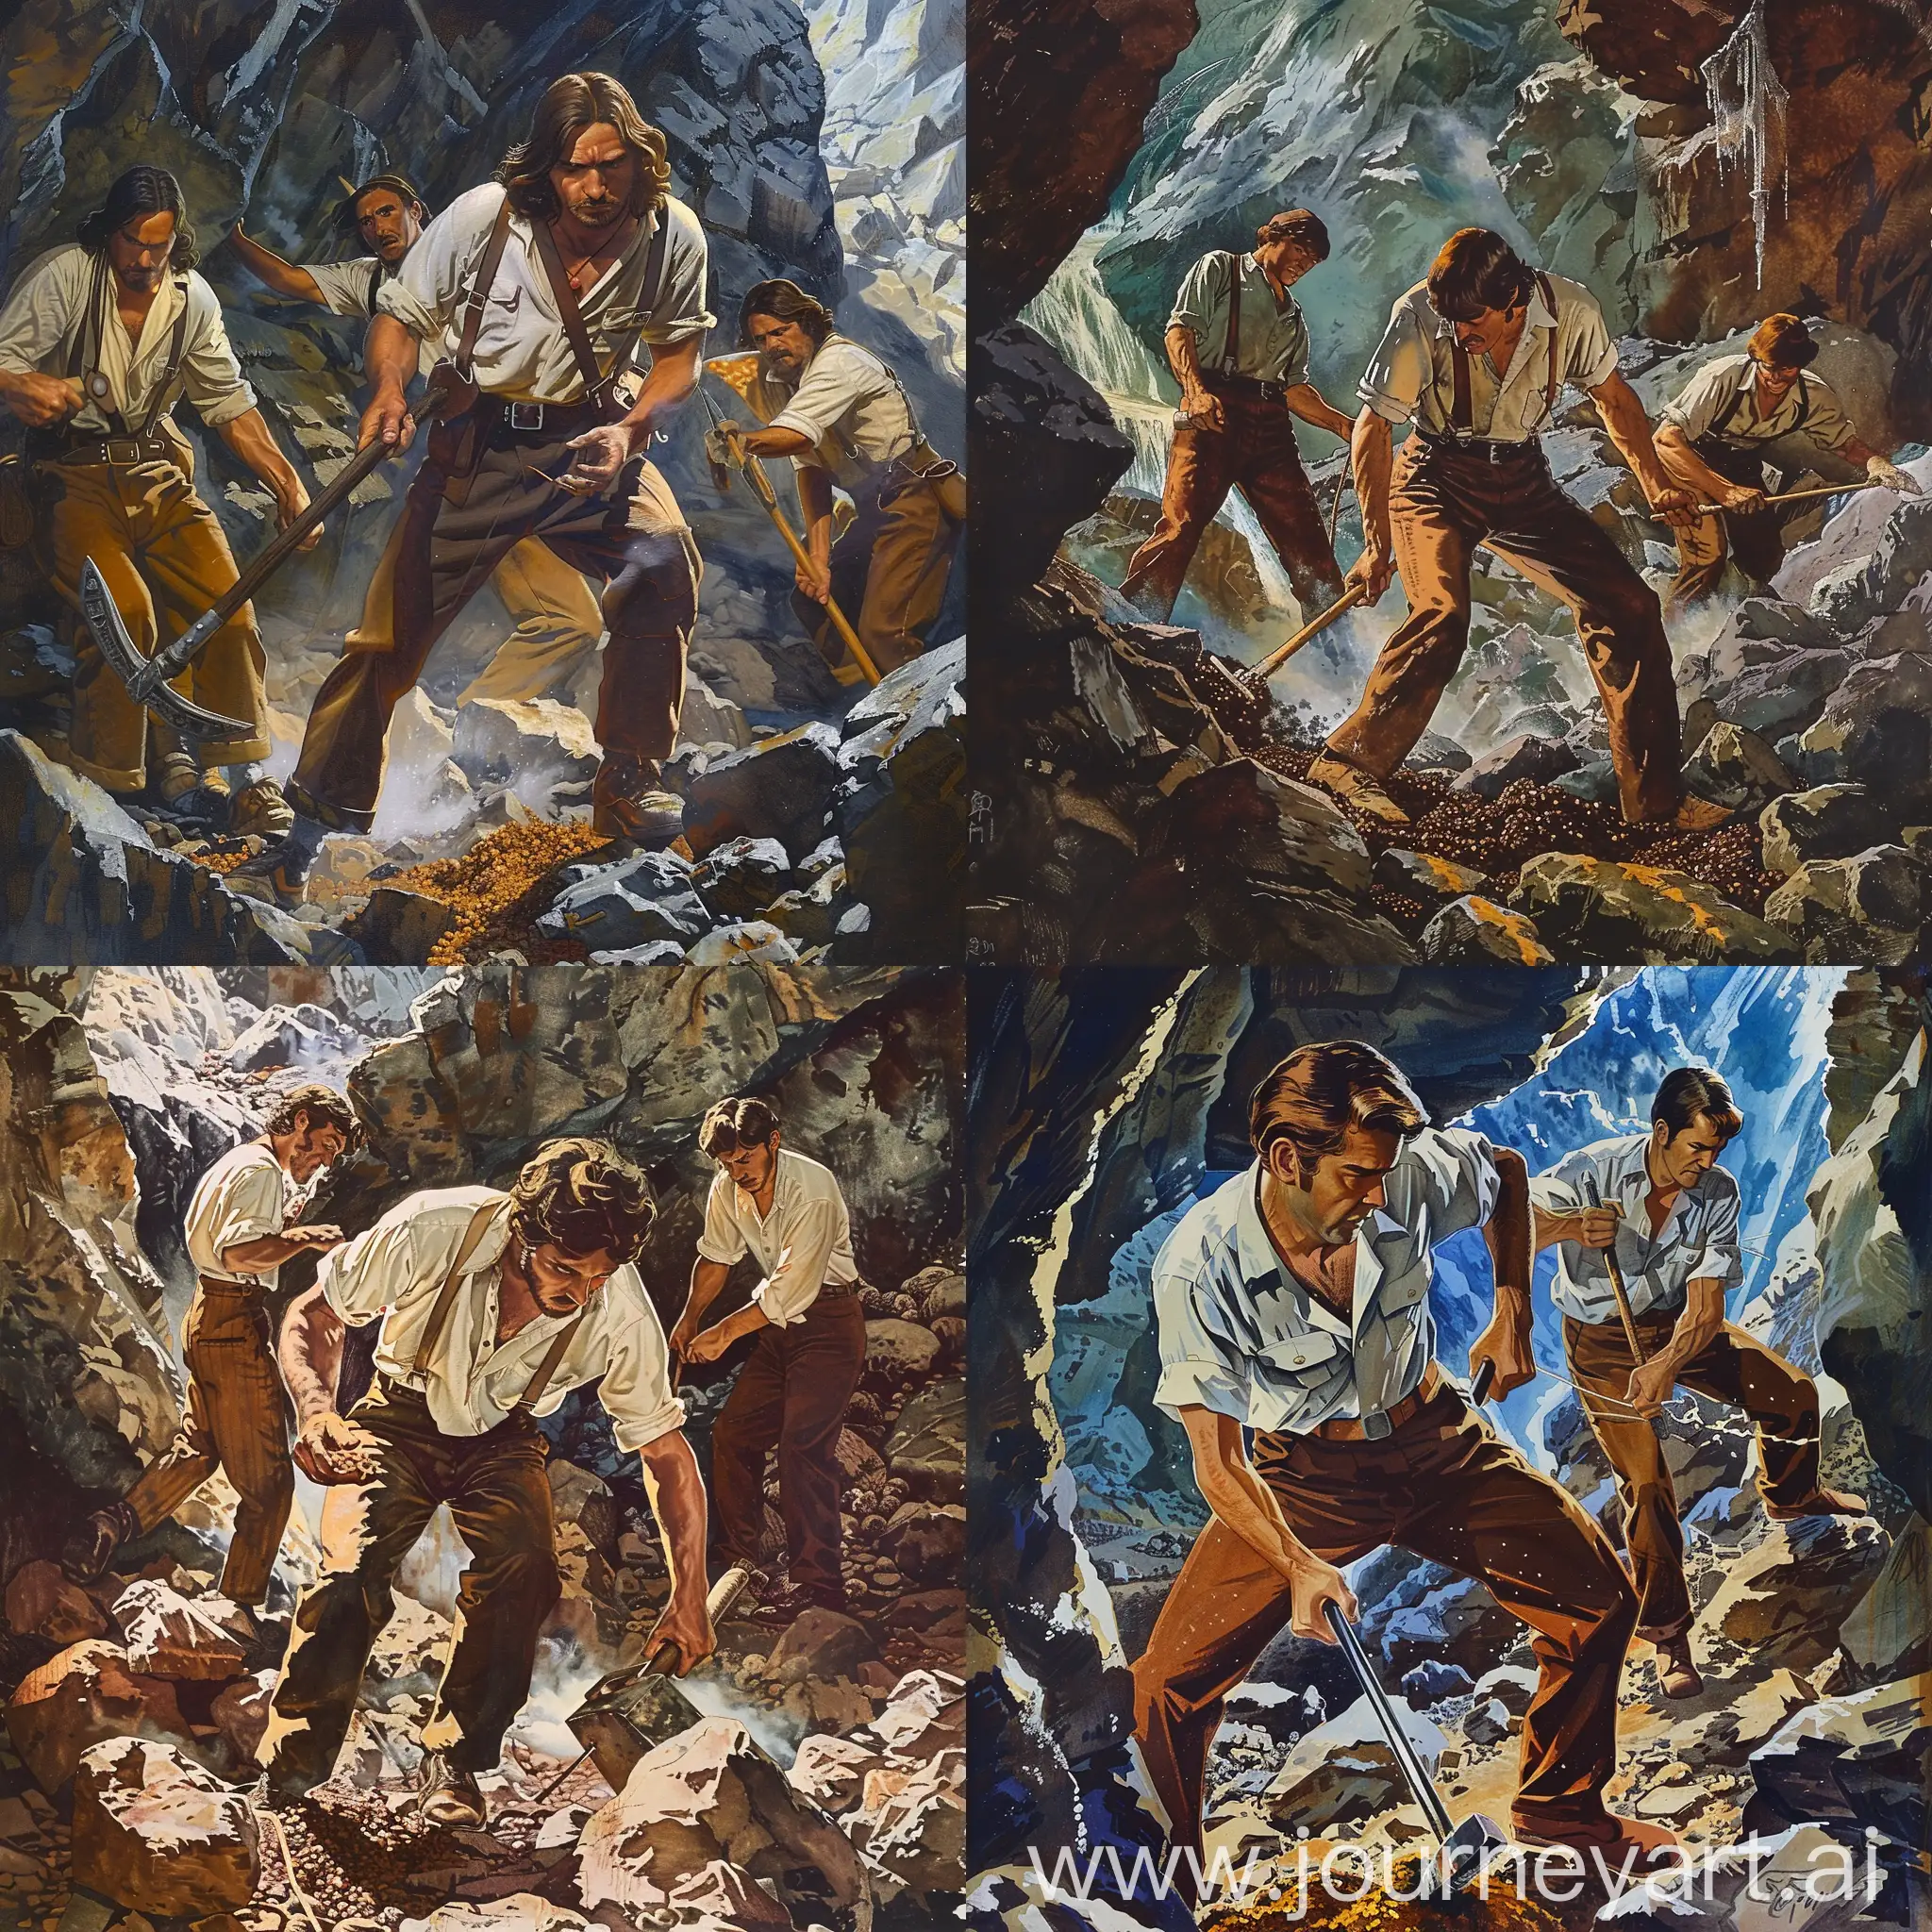 Dark-Fantasy-Illustration-Men-Mining-Ore-in-Cave